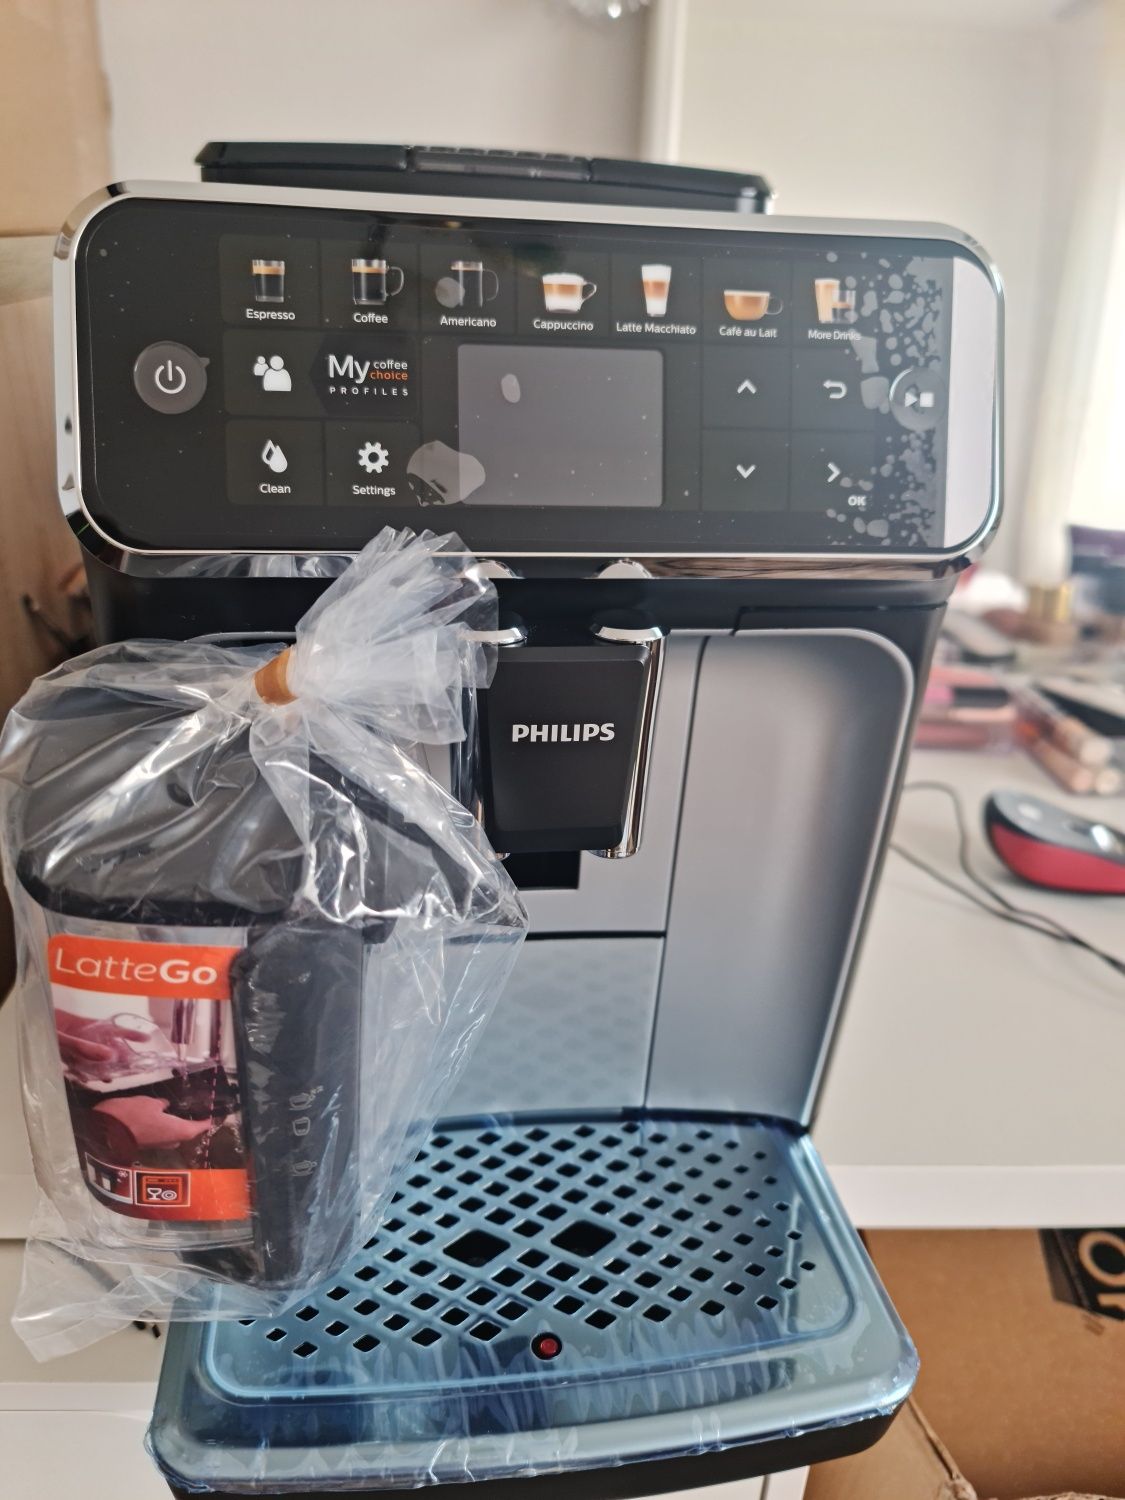 Espressor automat Philips Seria 5400